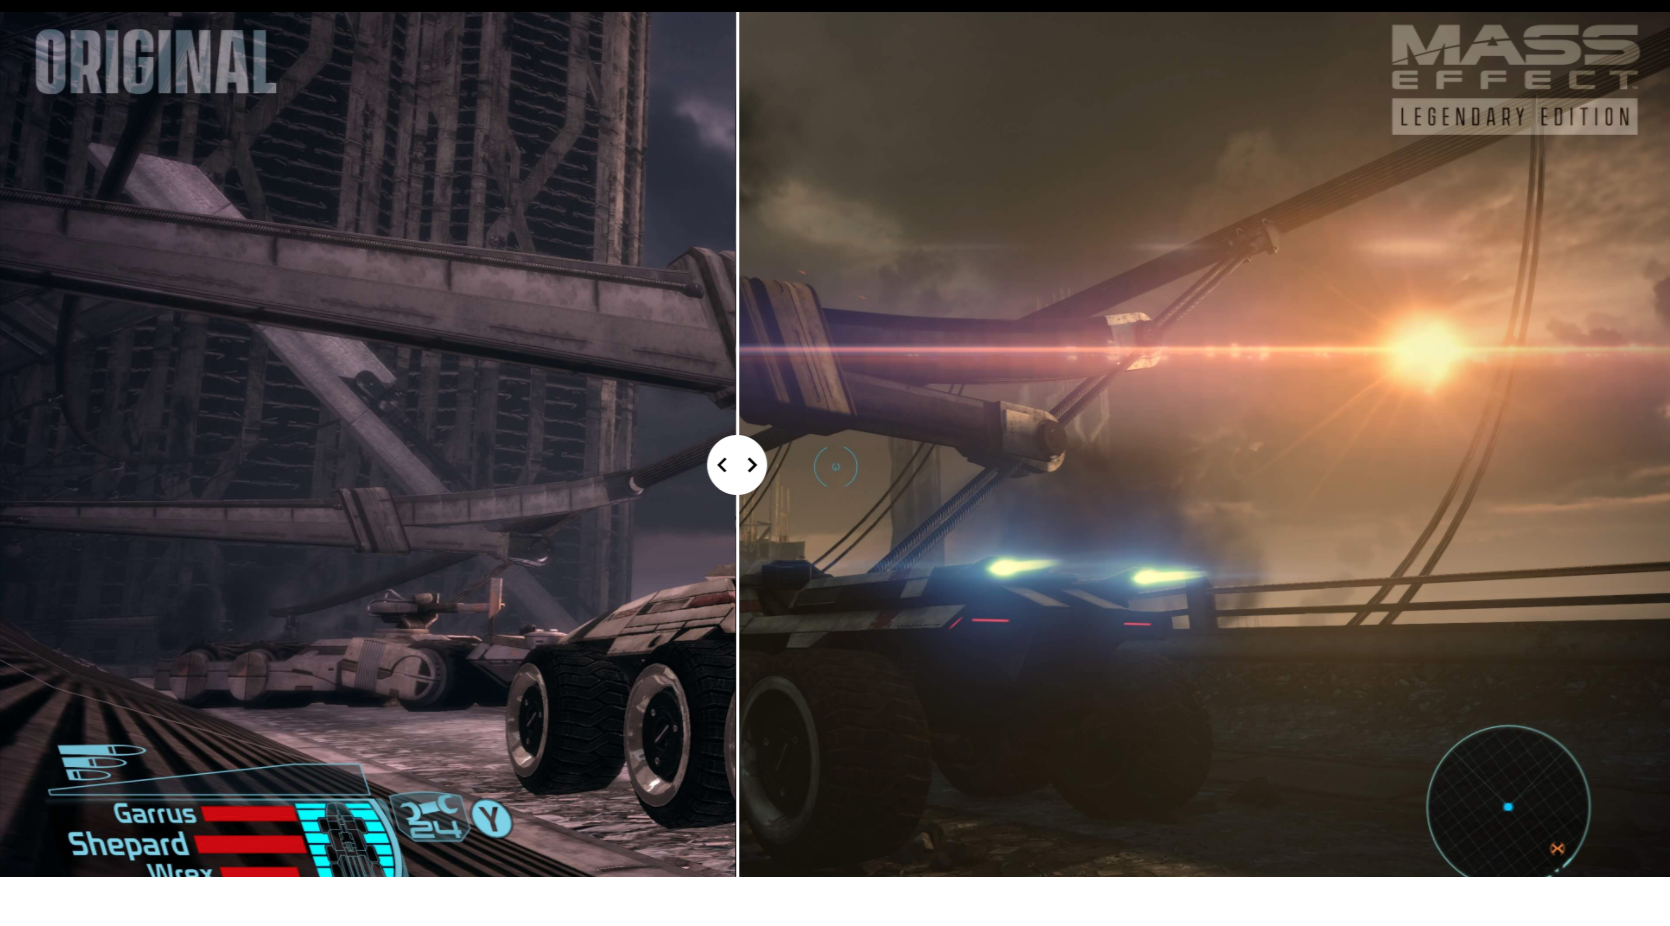 Nessa comparação, dá para ver bem a diferença no veículo Mako e no ambiente ao seu redor